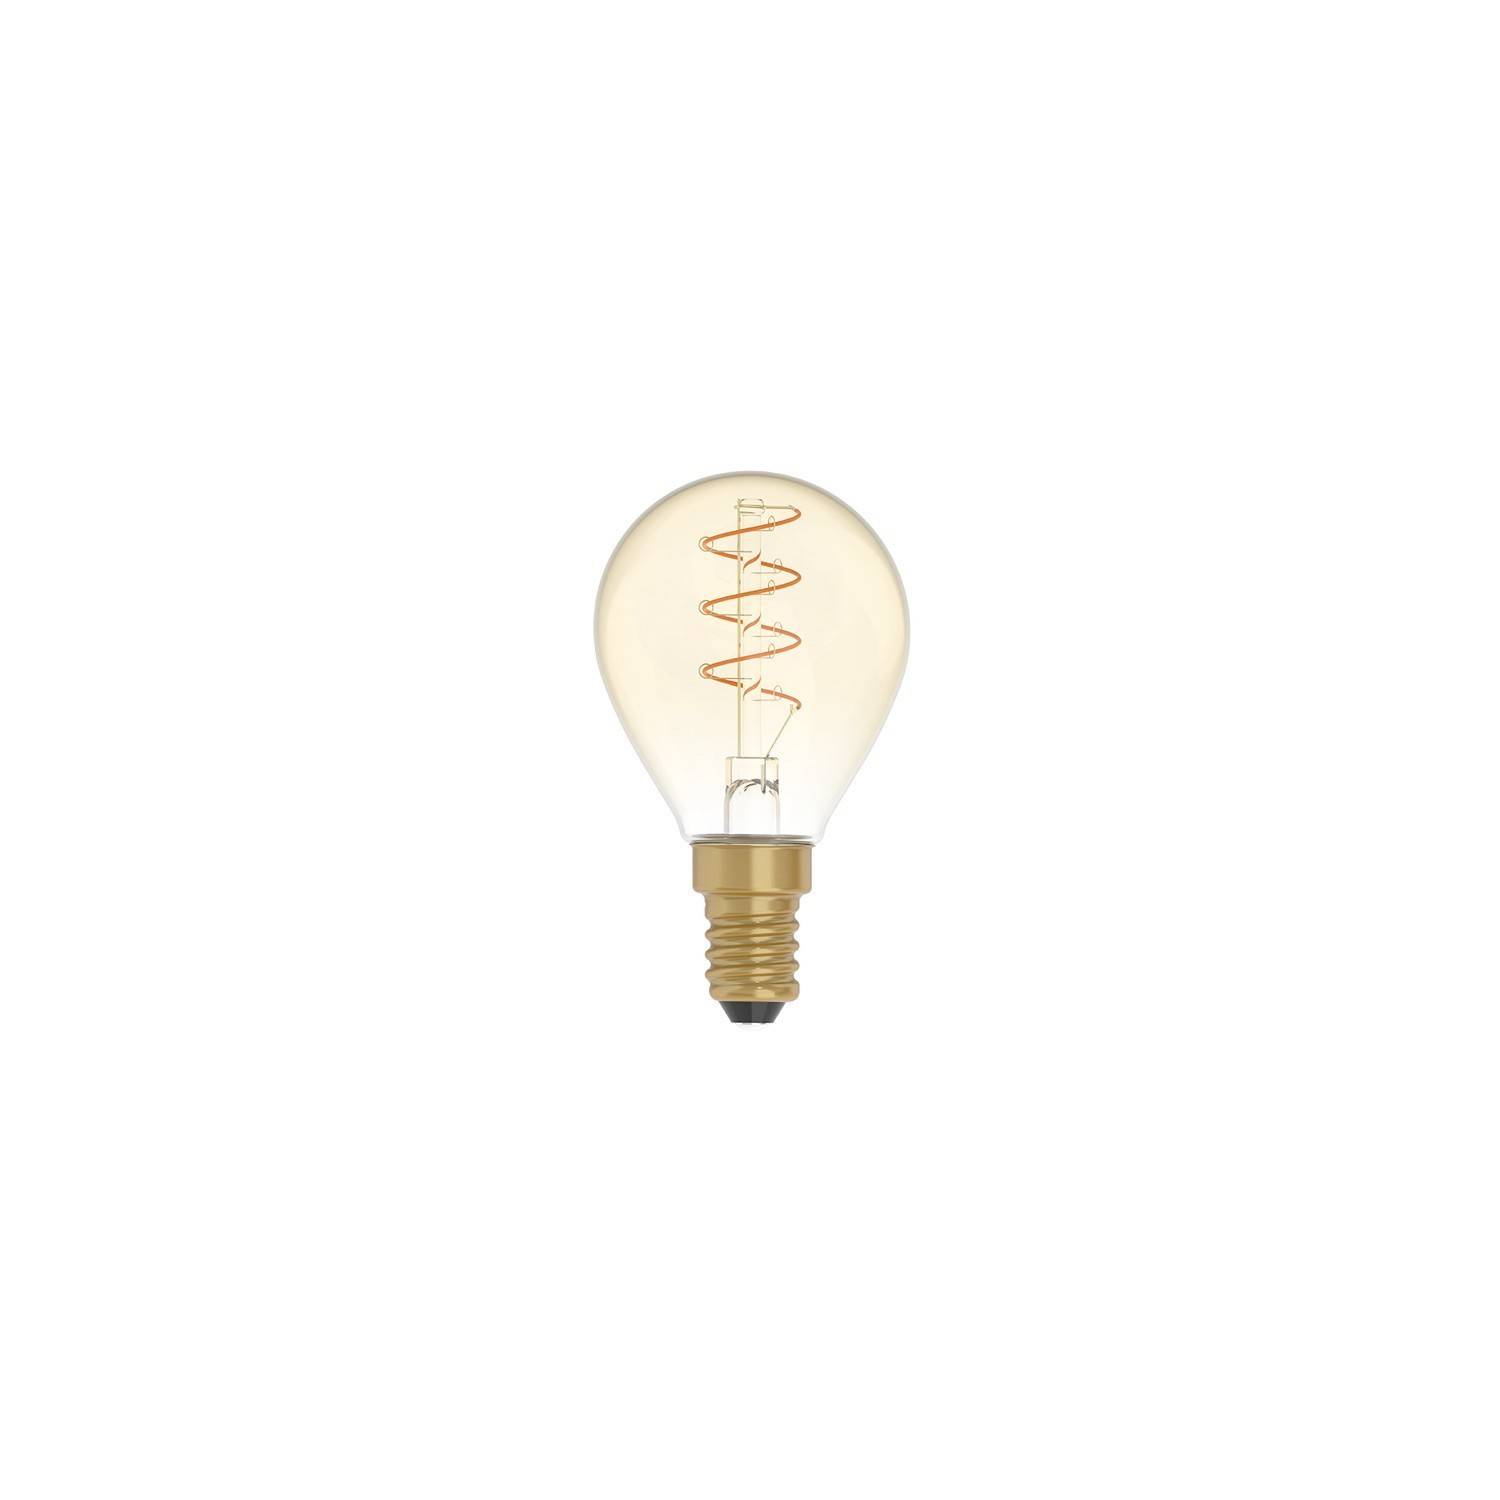 Bec cu LED de culoare aurie, cu filament spiralat curb, Globe mini G45 2,5W 136Lm E14 1800K Dimabil - C02